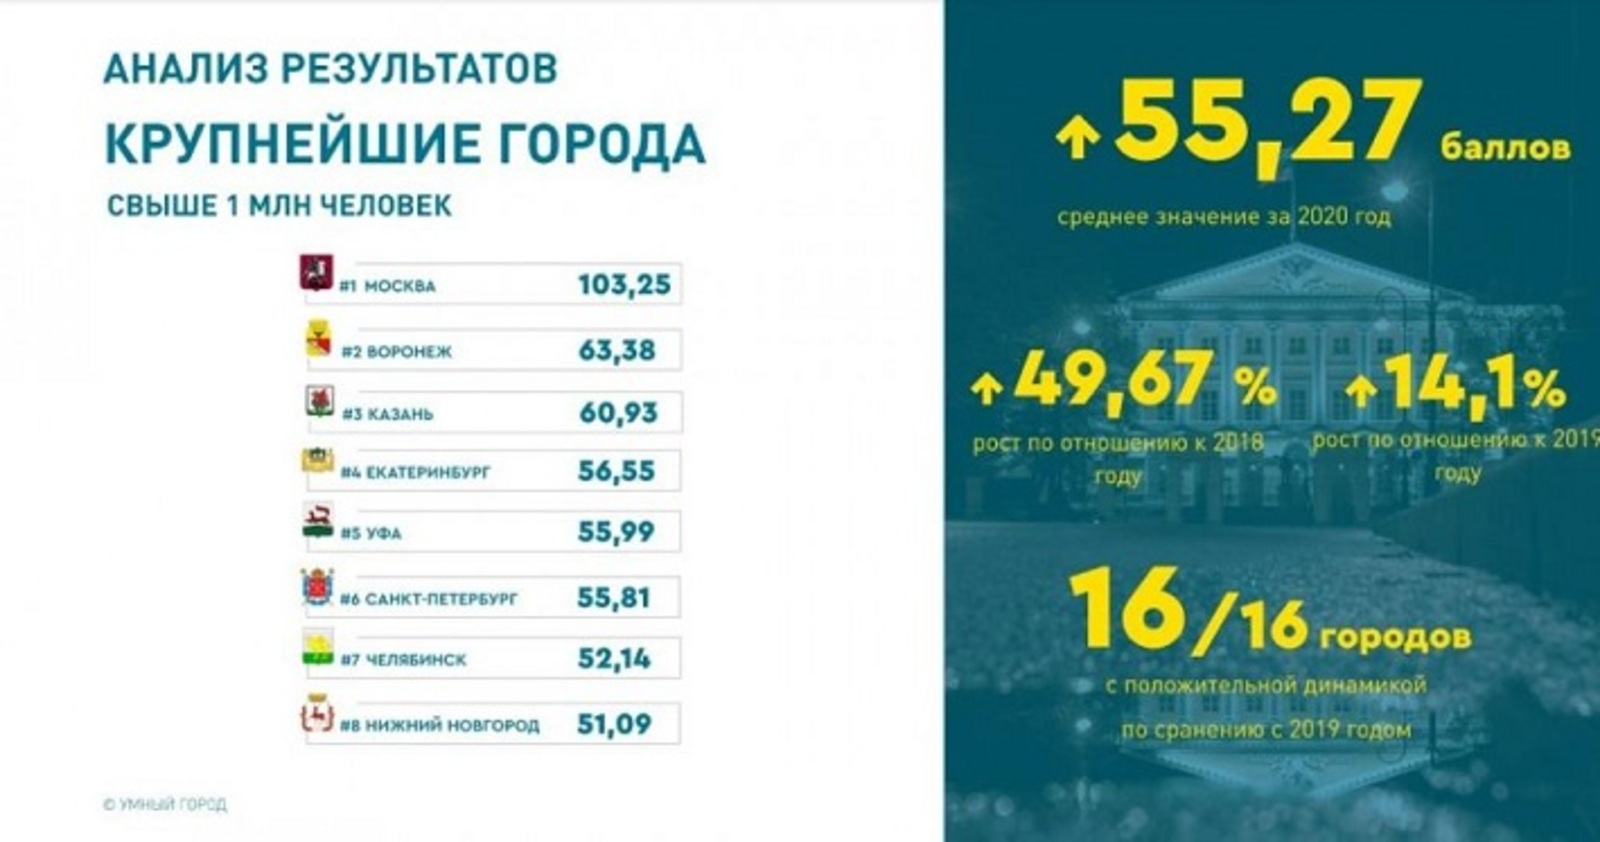 Уфа вошла в топ-5 «умных» городов